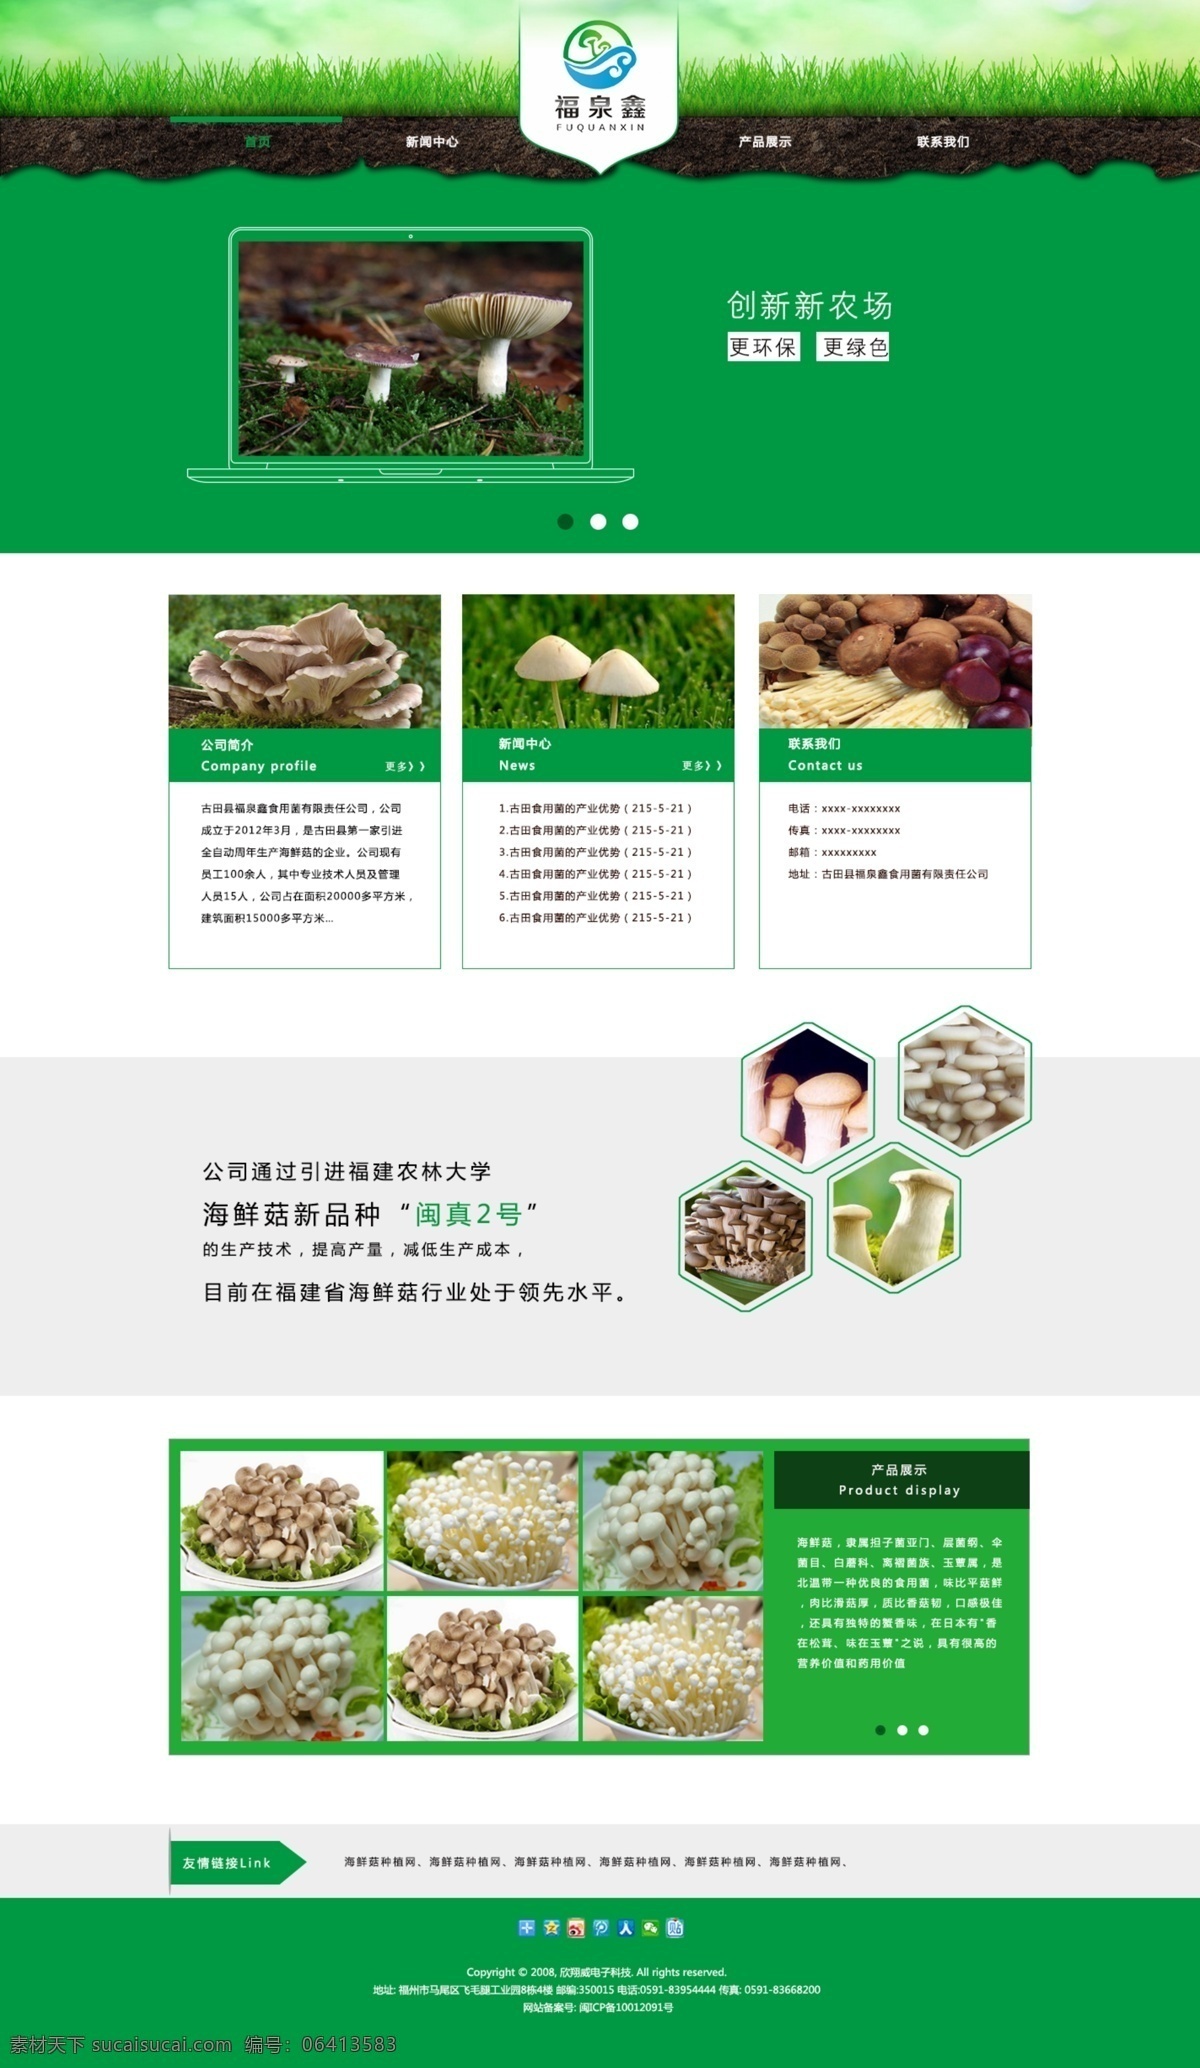 食用 菌类 网站 飞机 稿 食用菌类网页 食用菌网页 绿色调 菇类网页 菌类页面 web 界面设计 中文模板